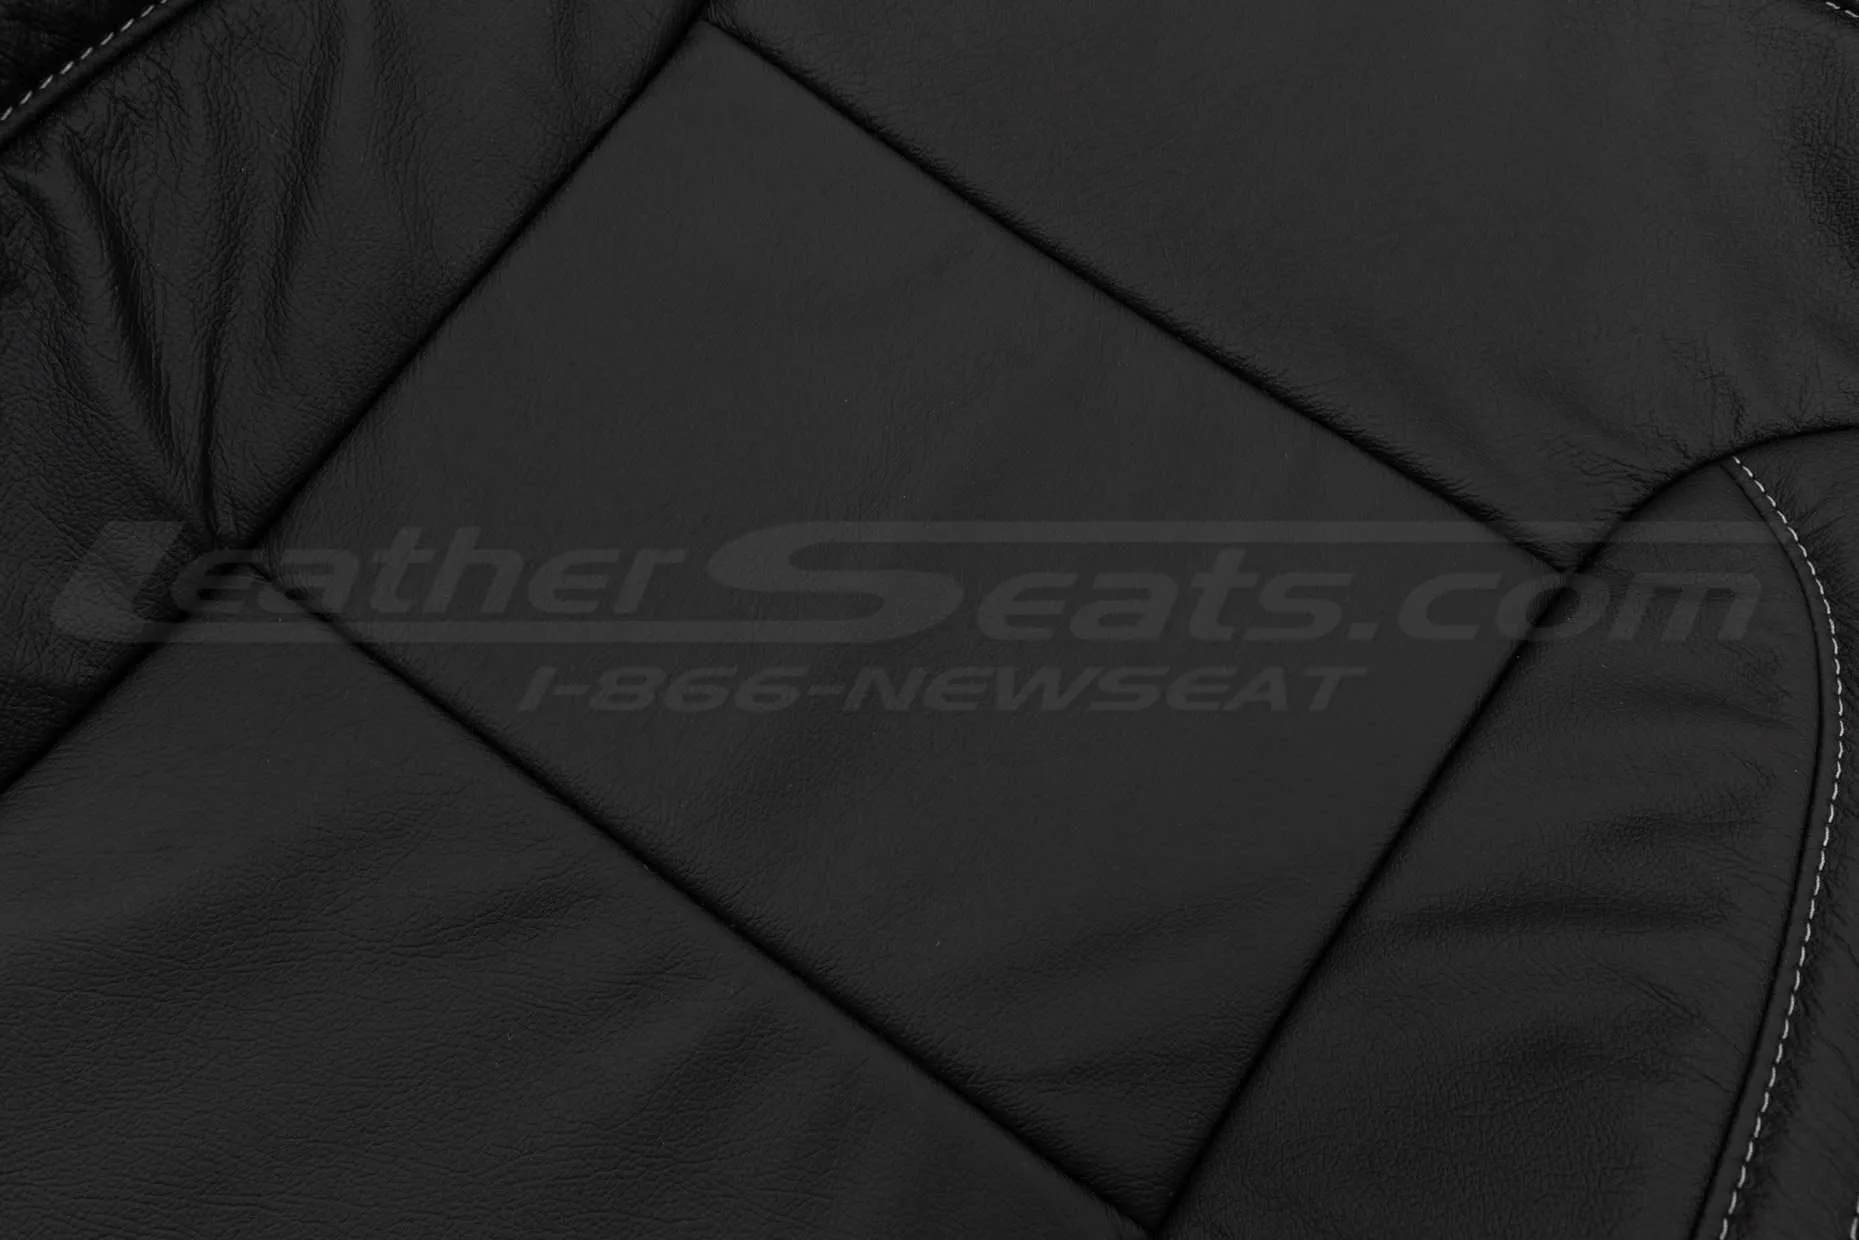 Backrest isnert leather texture